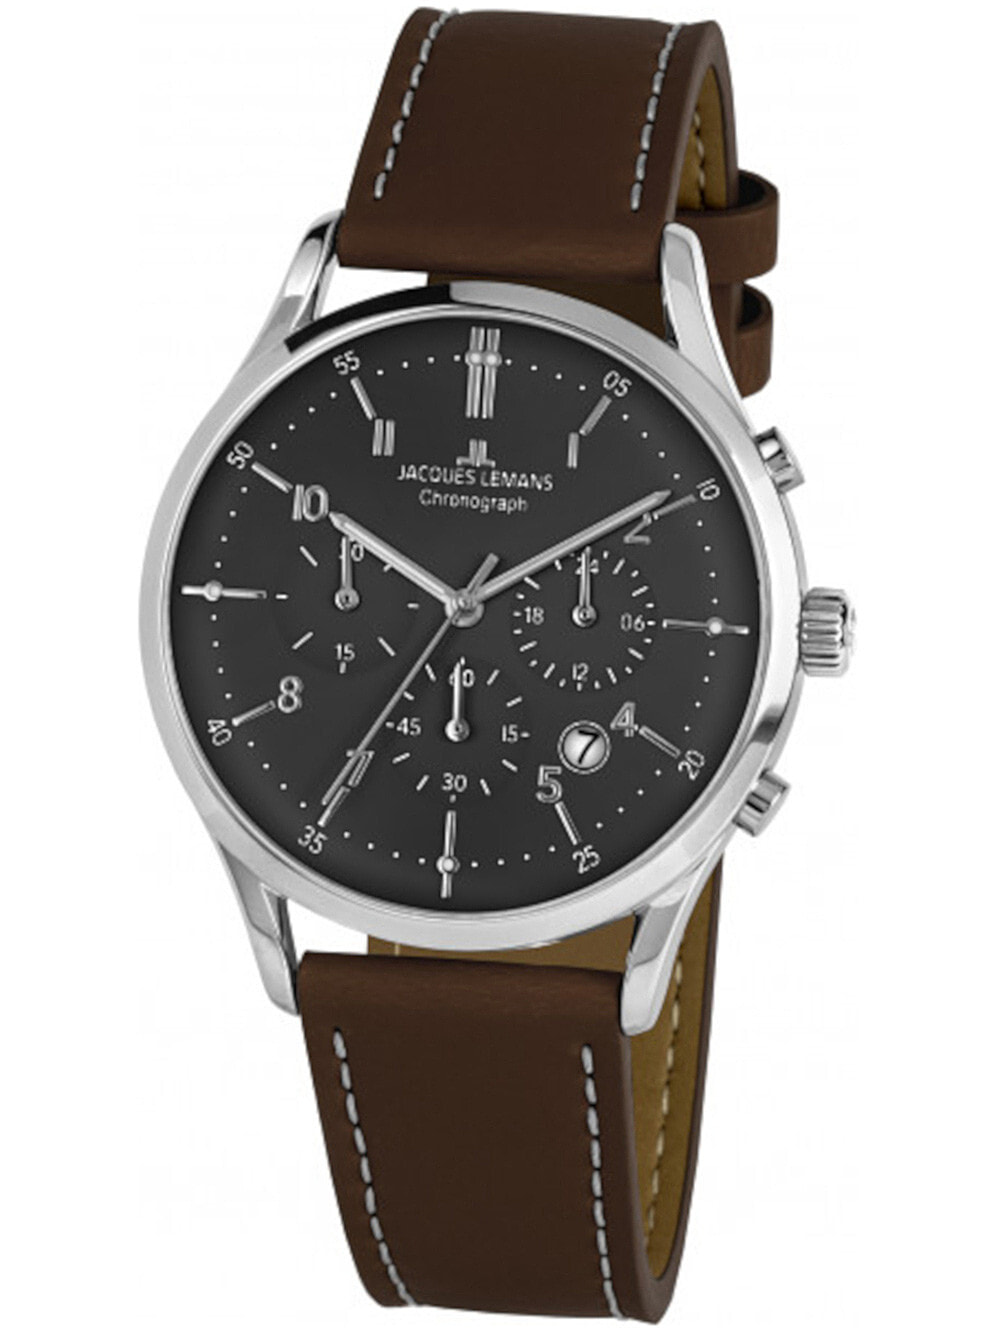 Мужские наручные часы с коричневым кожаным ремешком Jacques Lemans 1-2068M Retro Classic chrono mens 41mm 5ATM